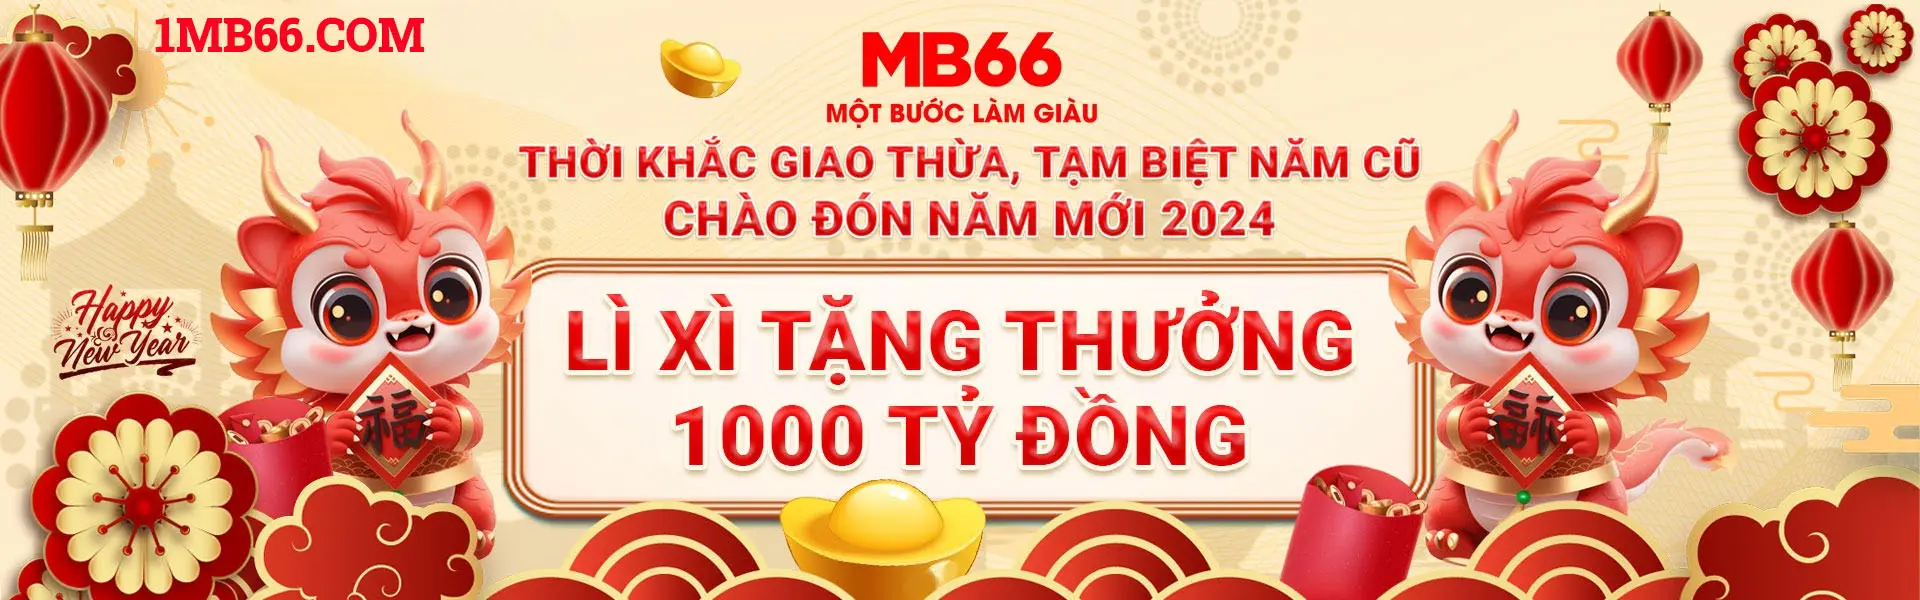 MB66 | LINK ĐĂNG KÝ - ĐĂNG NHẬP CHÍNH THỨC NHÀ CÁI MB66.COM